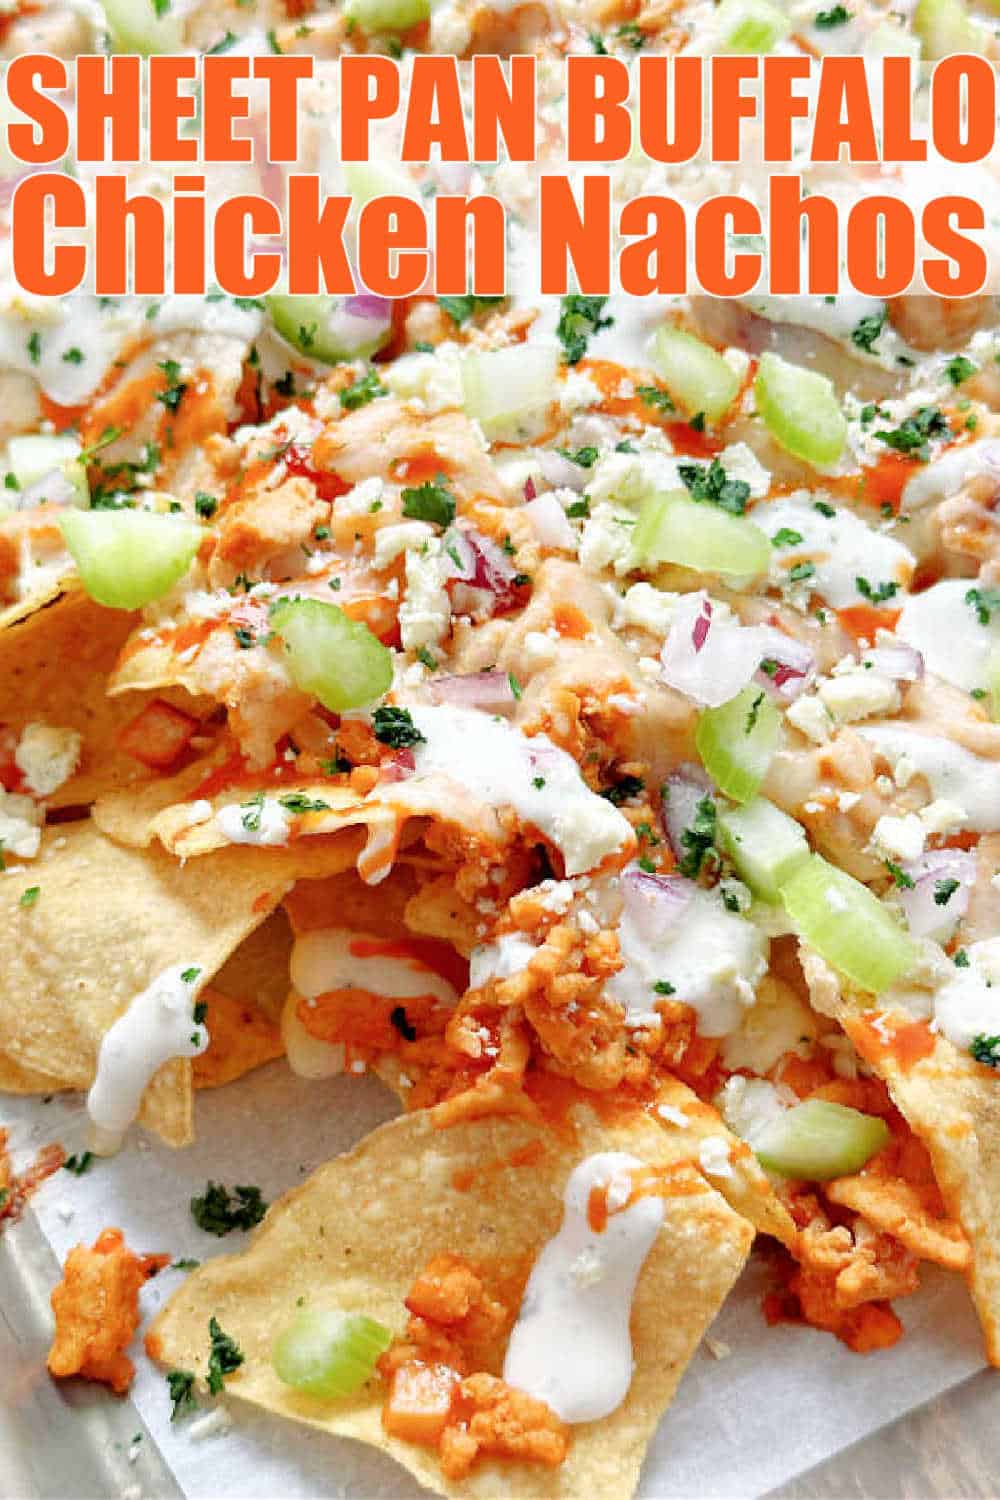 Buffalo Chicken Nachos | Foodtastic Mom #buffalochickennachos #sheetpannachos #buffalochicken via @foodtasticmom